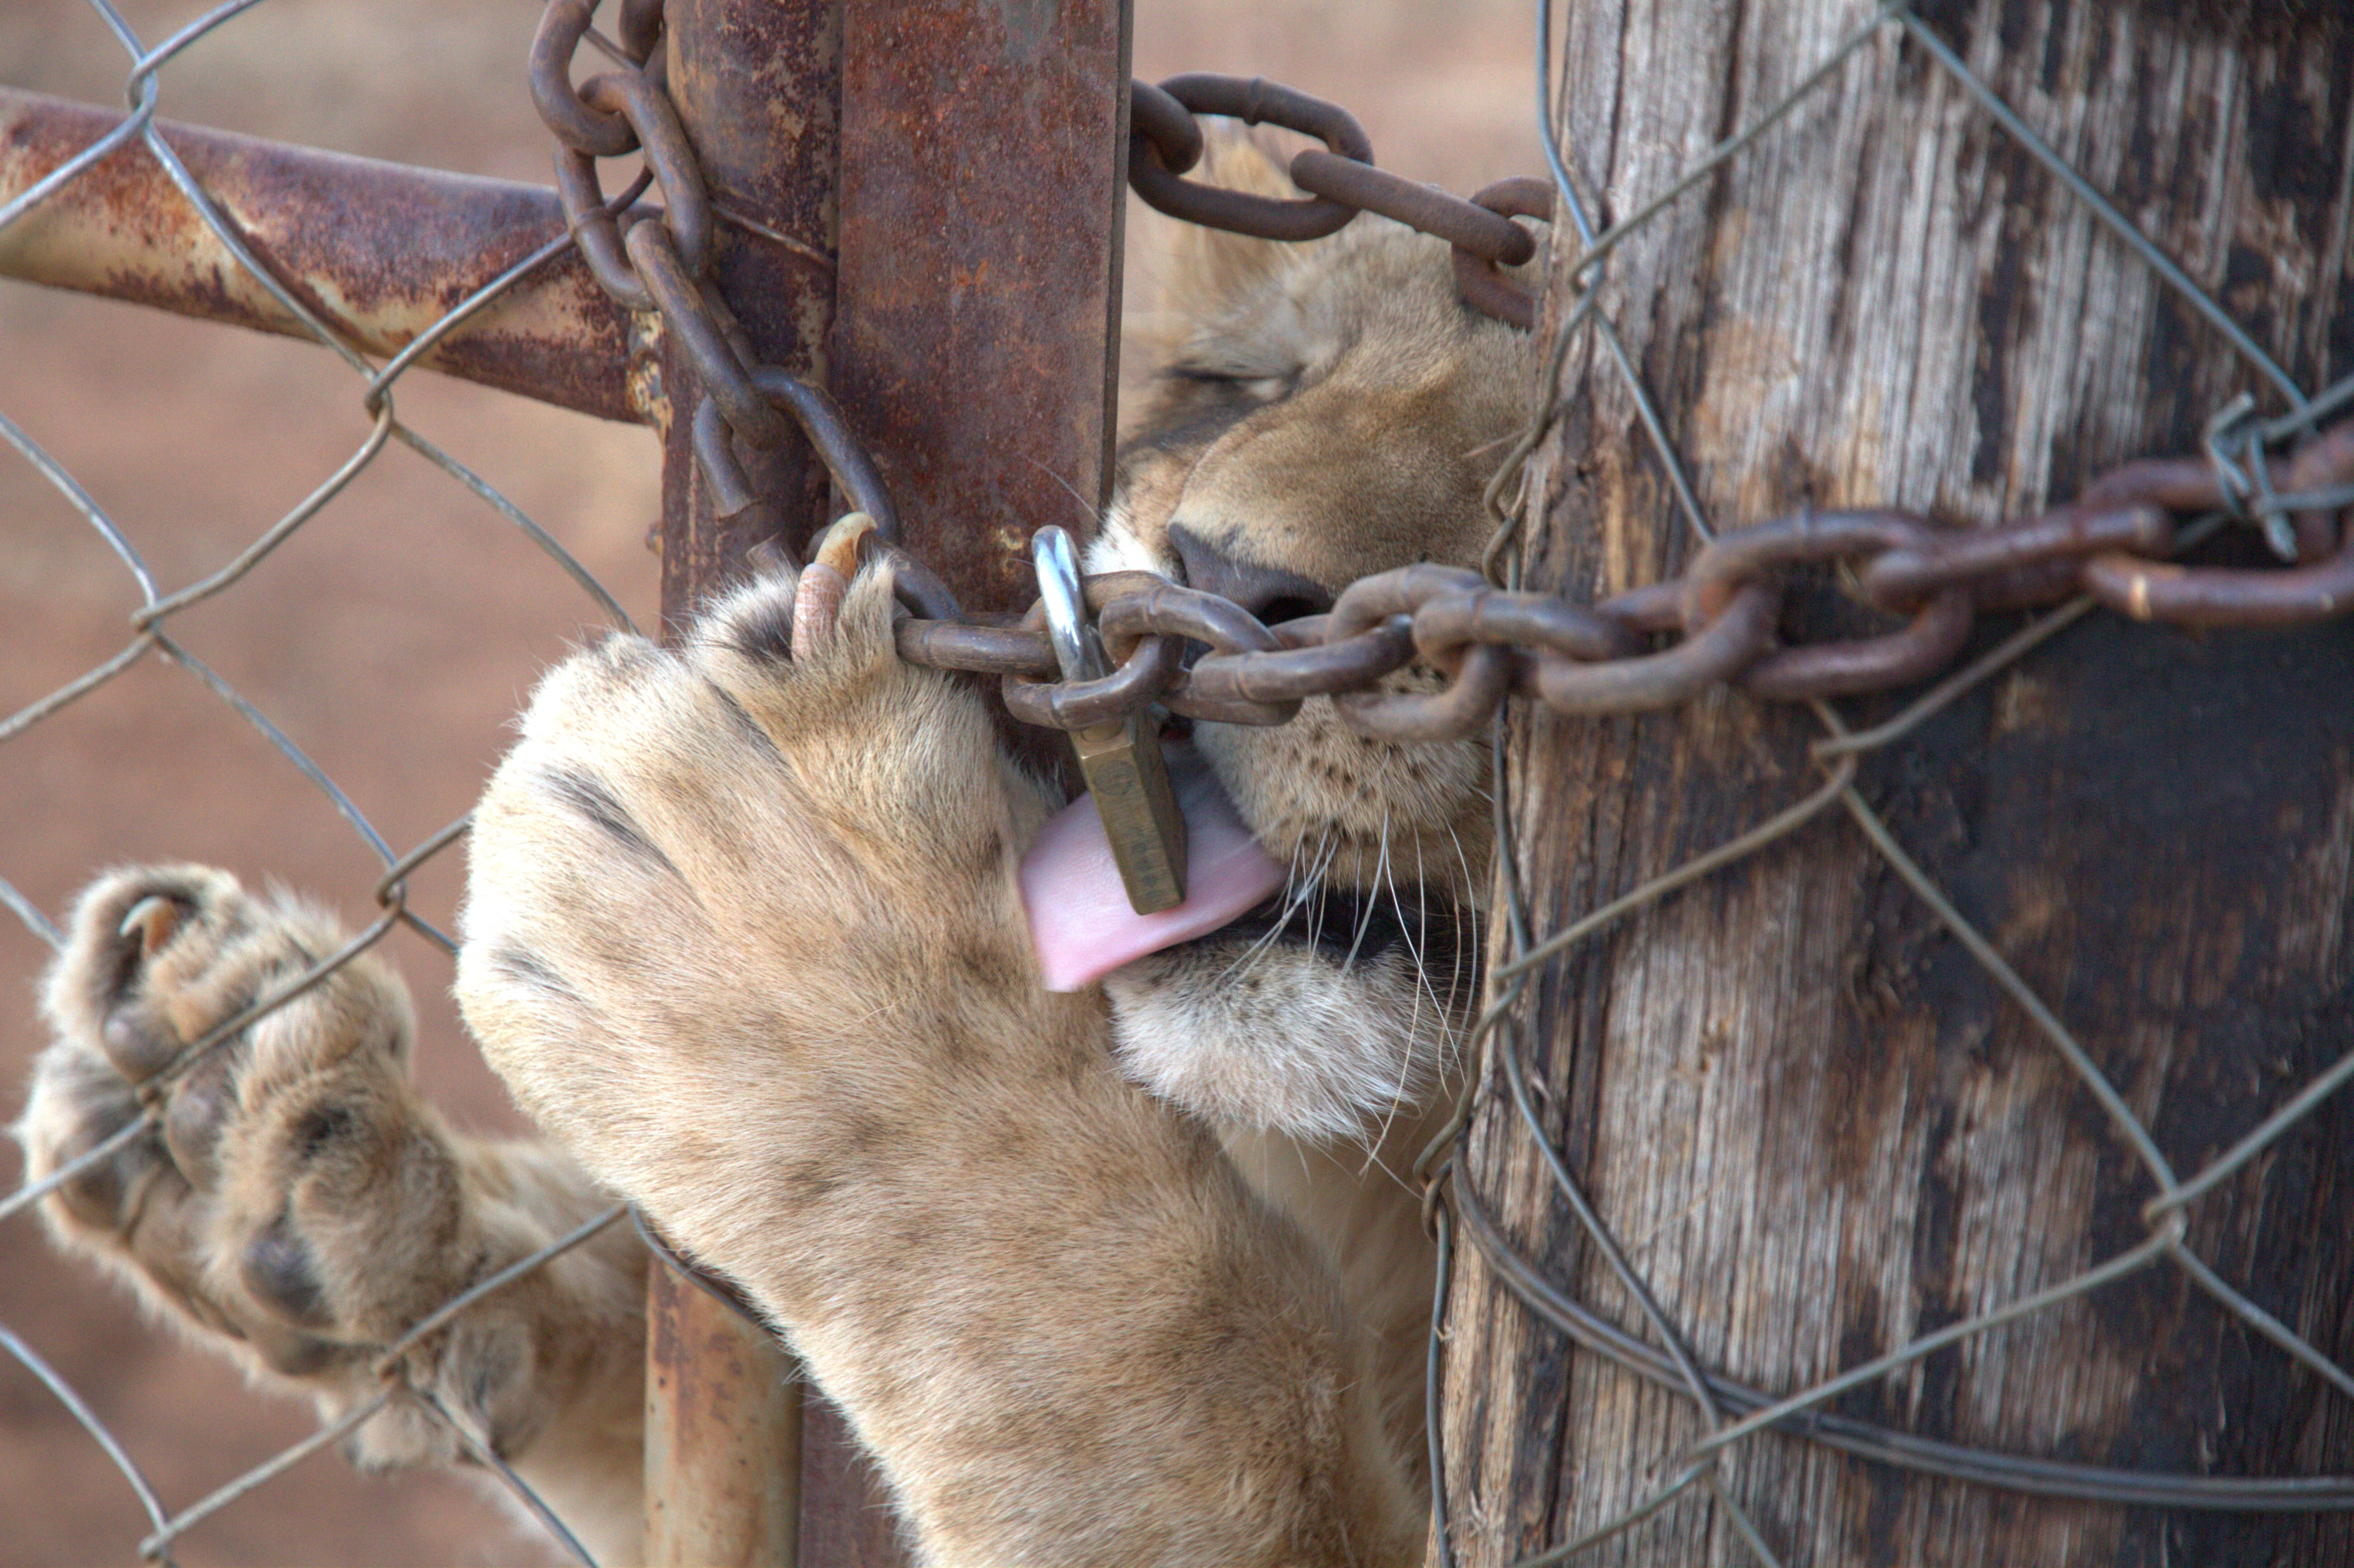 A lion cub behind a gate, licking a lock